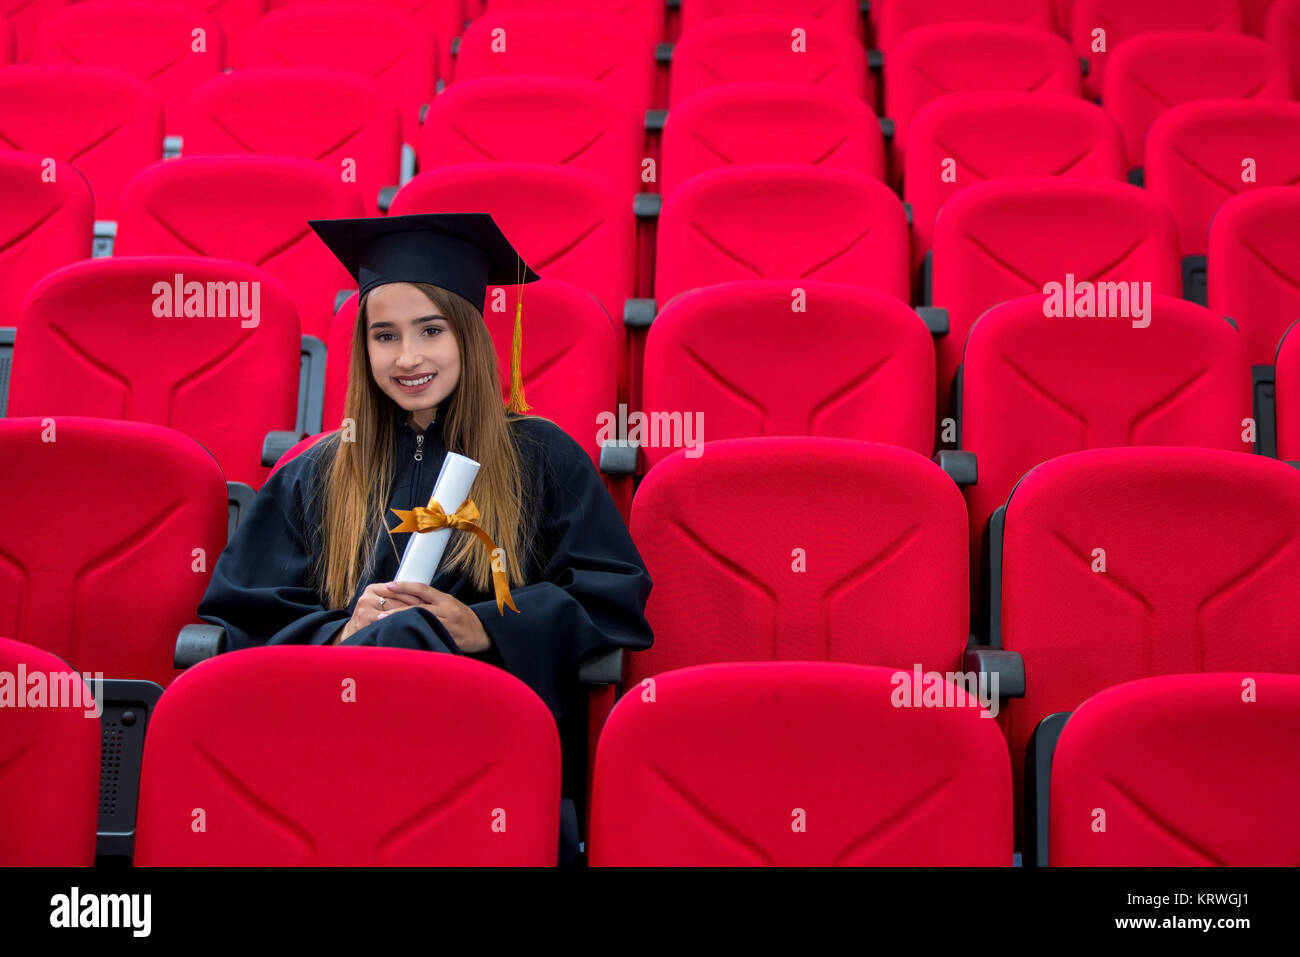 Graduation, education, portrait, red conference room, concept, portrait Stock Photo